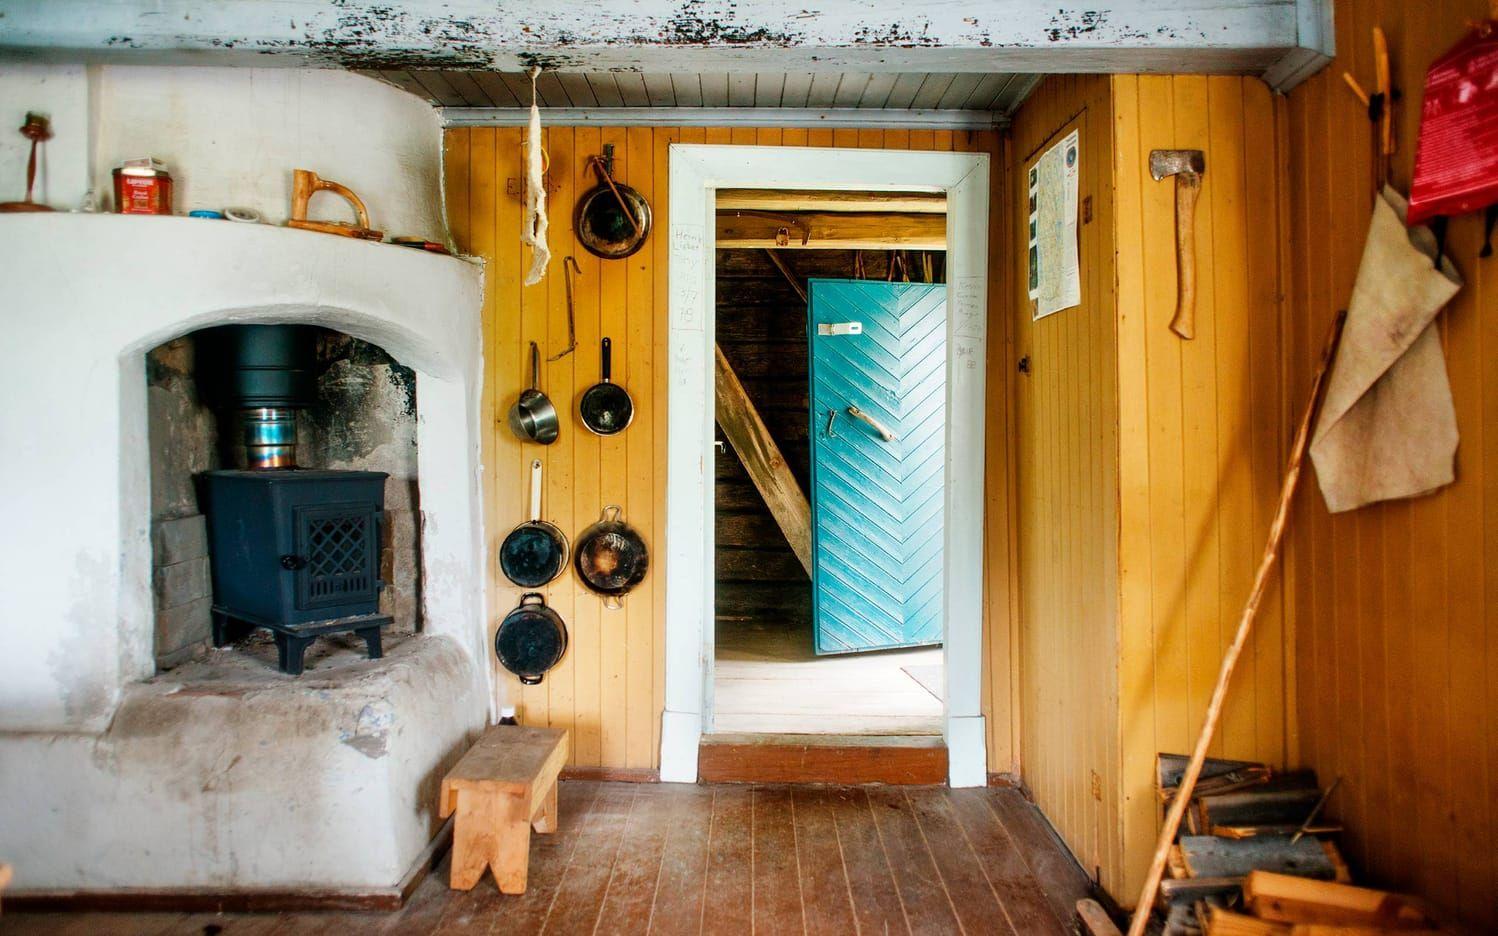 "Man får känslan av att gå in i ett gammalt hem" säger Moa Karlberg, när hon beskriver stugan. Bild: Moa Karlberg.